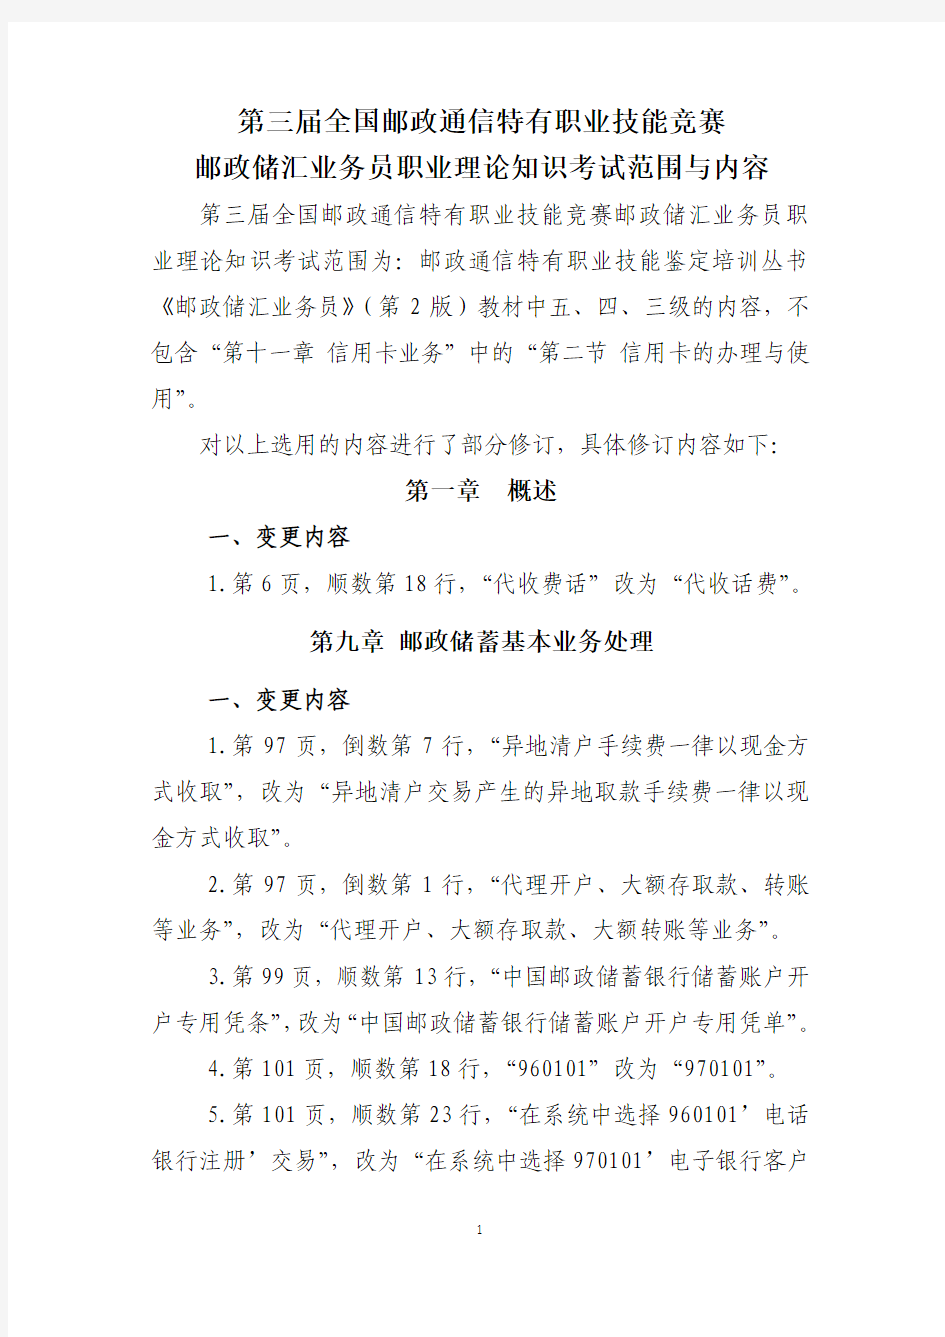 2012年中国邮政储汇业务员理论知识考试范围与内容